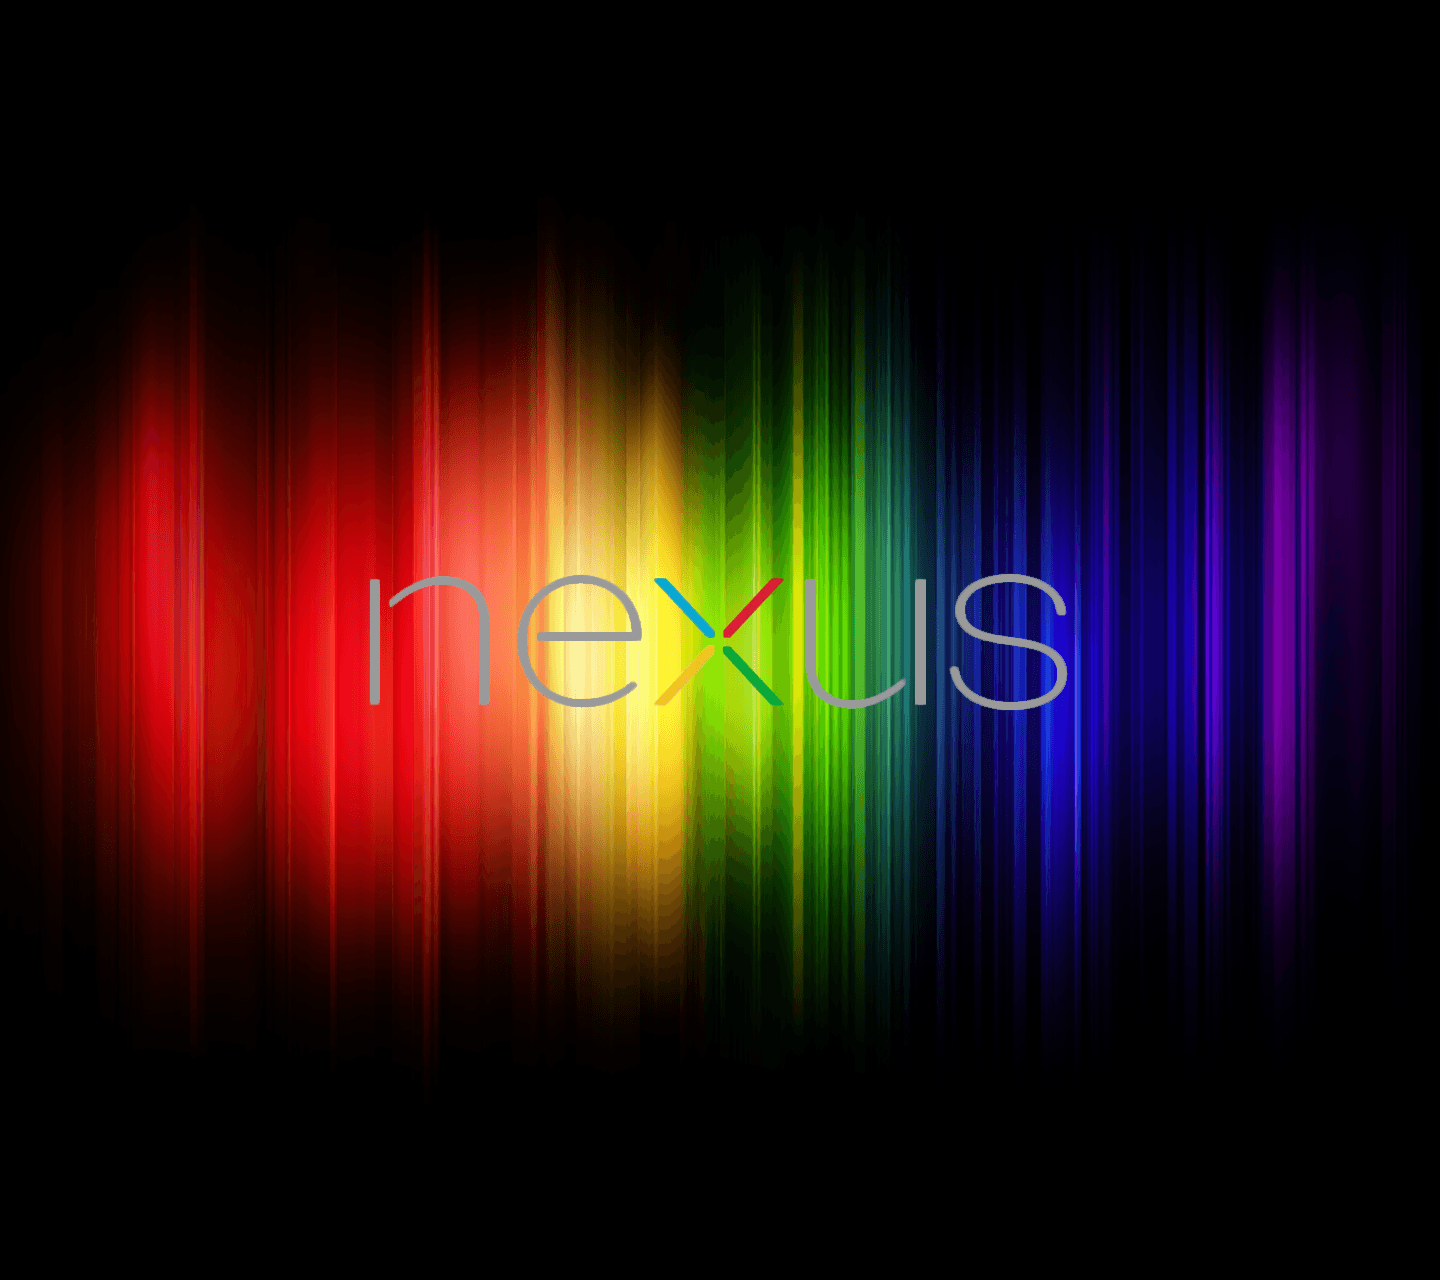 Google Nexus Backgrounds - Wallpaper Cave